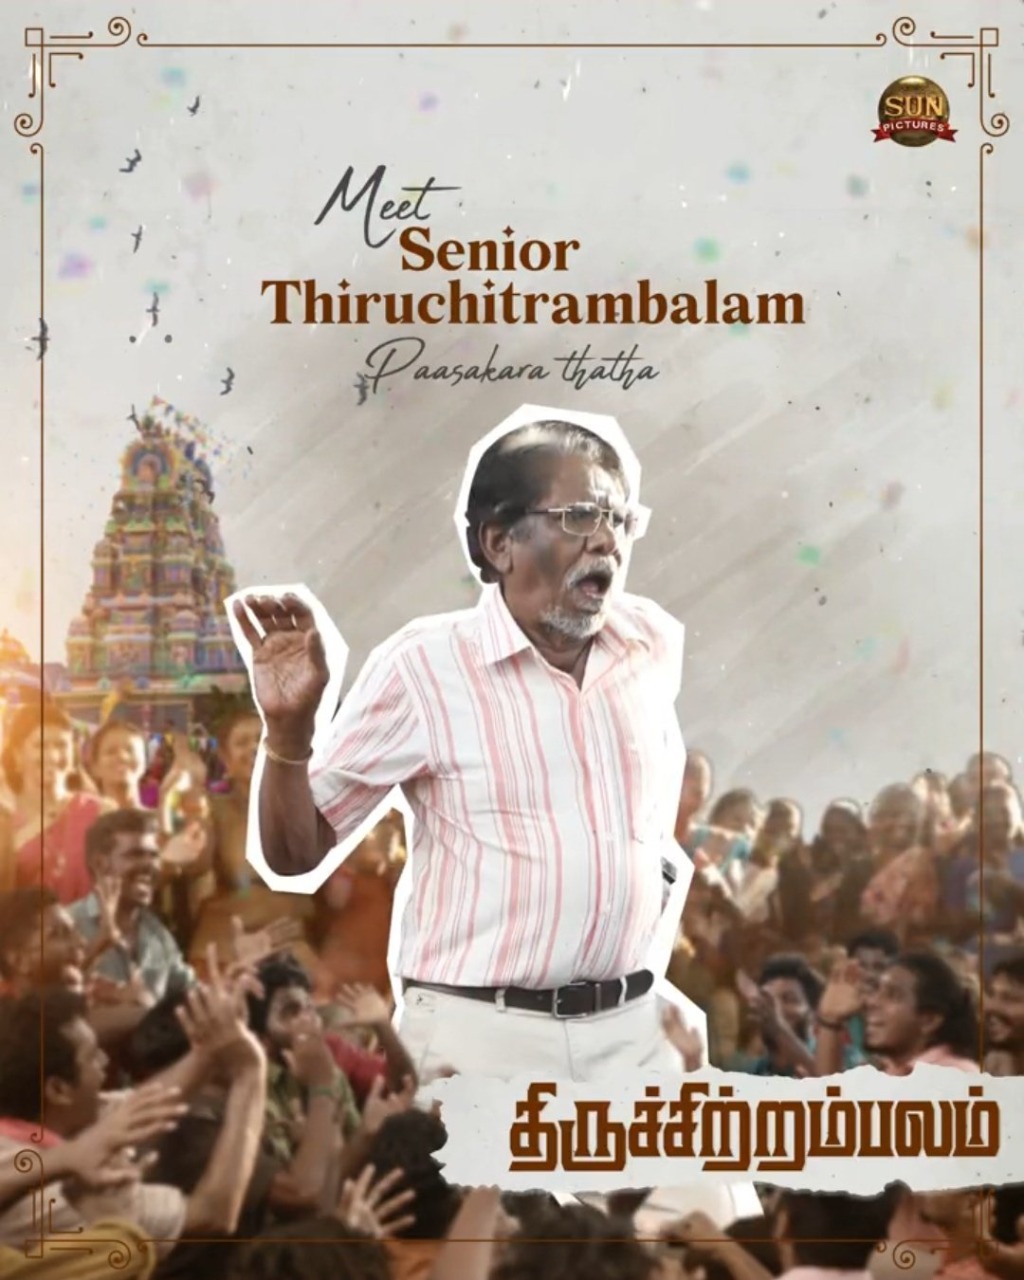 Thiruchitrambalam Bharathi Raja Charecter Look Poster Released